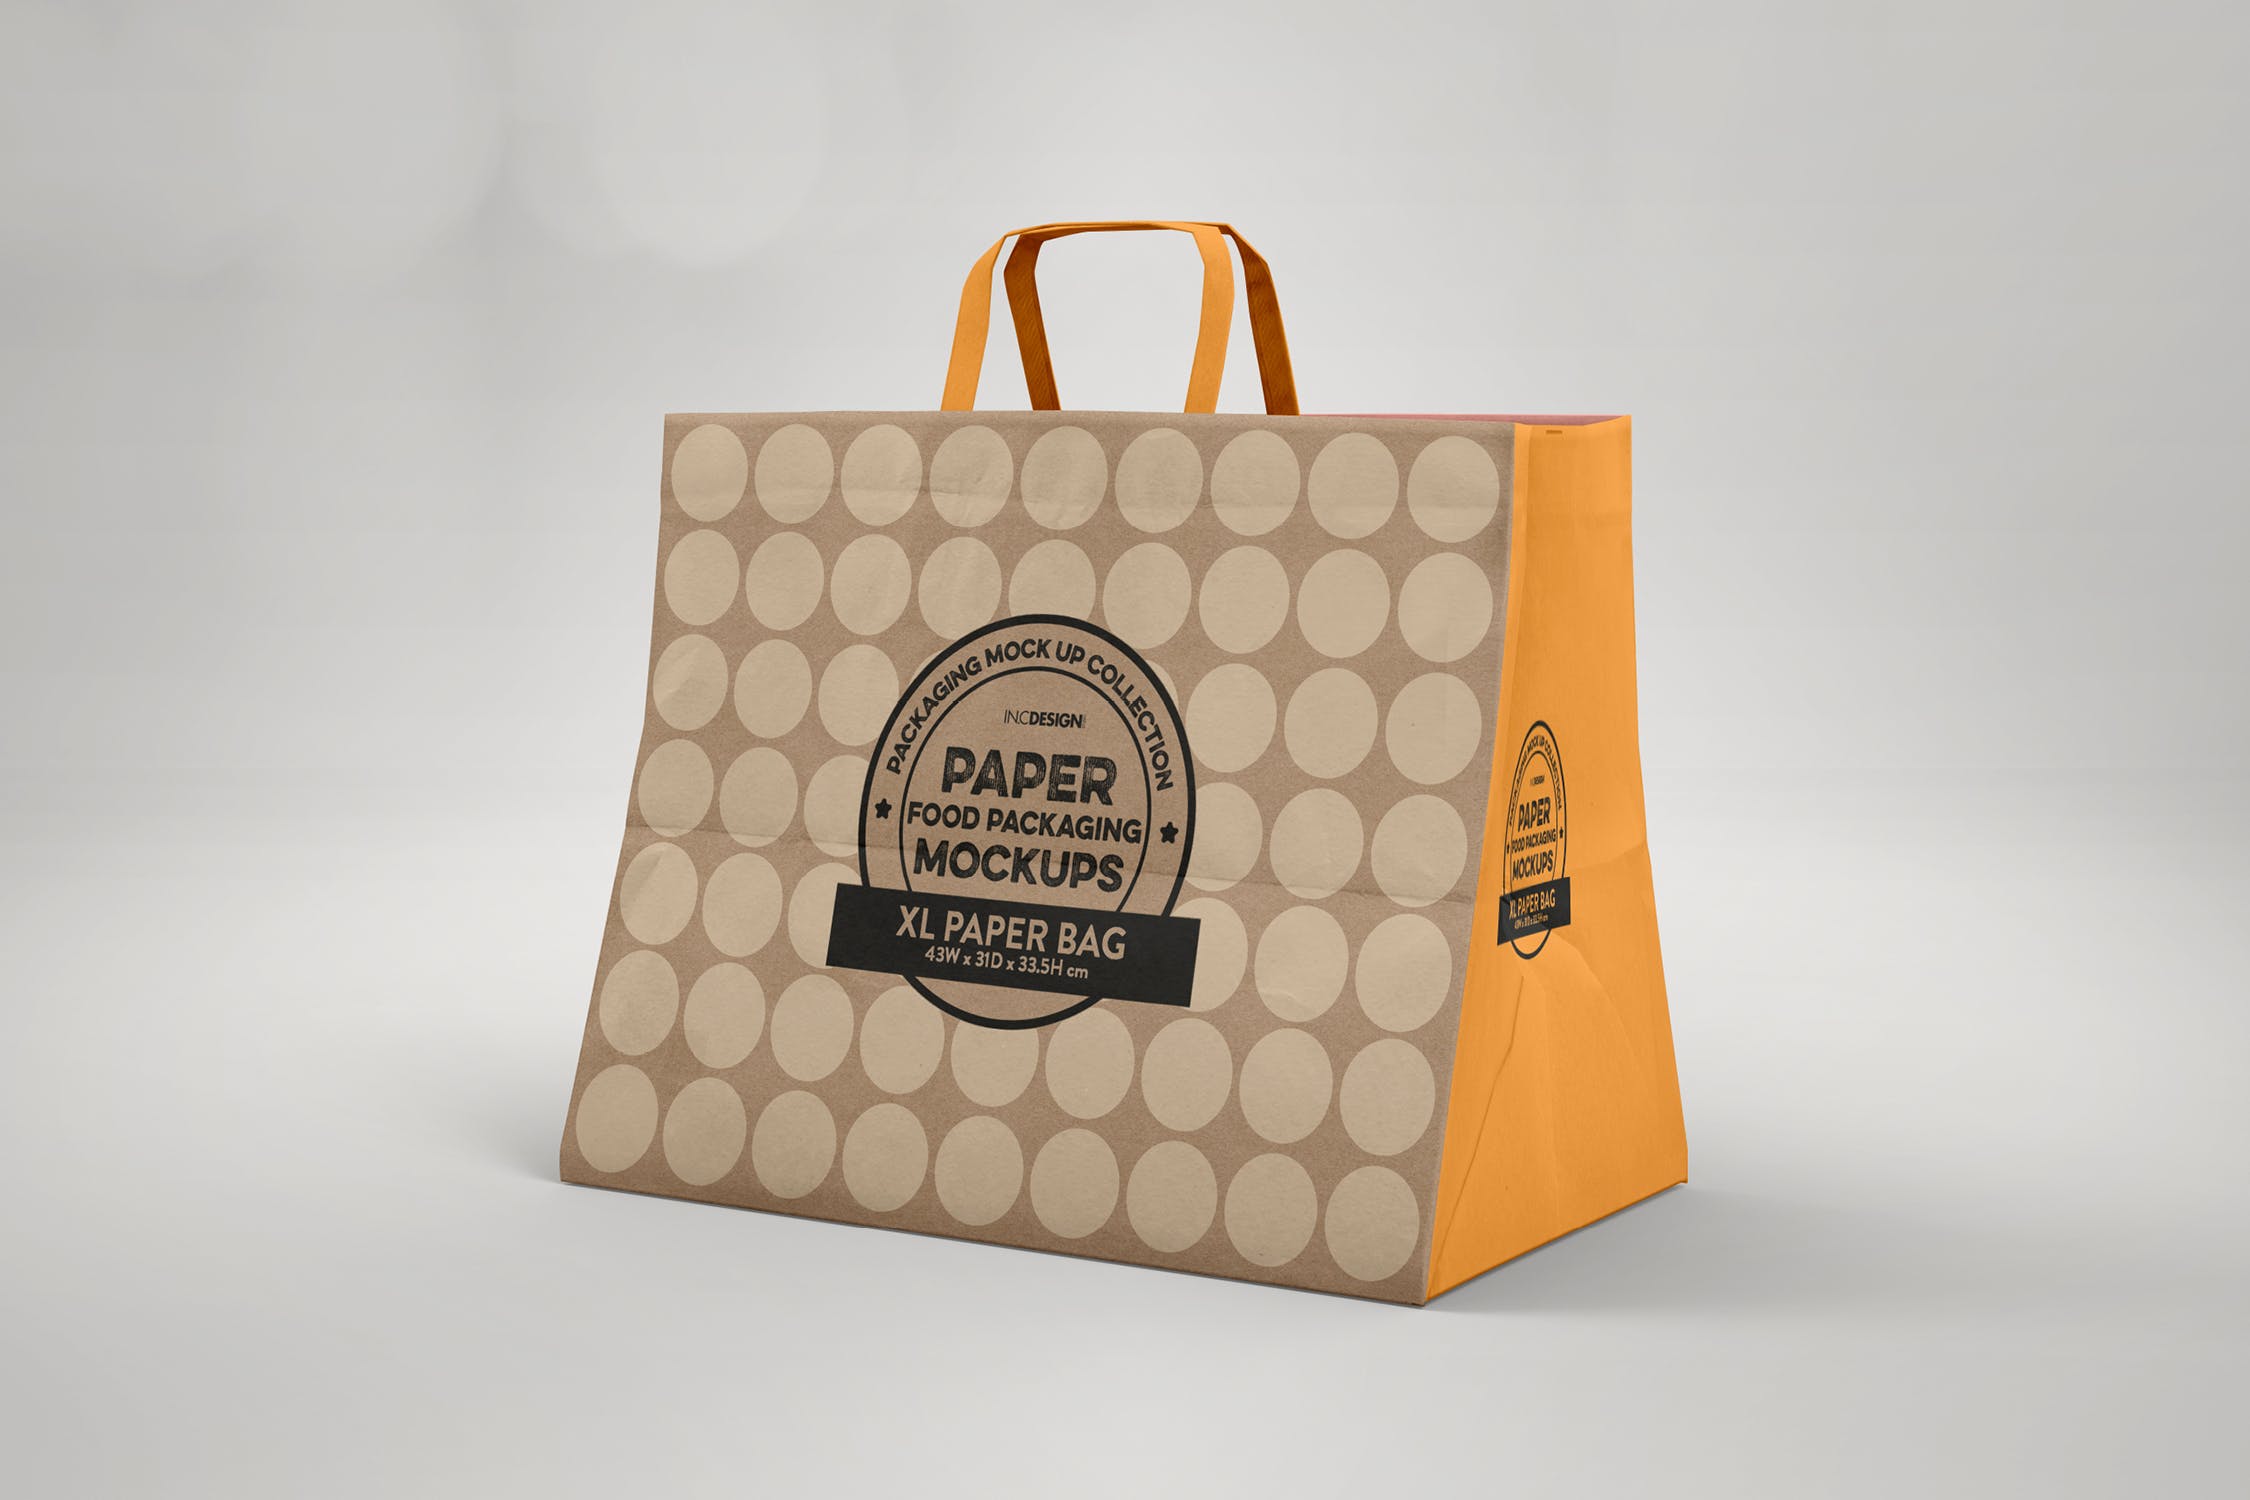 加大型购物纸袋设计图第一素材精选模板 XL Paper Bags with Flat Handles Mockup插图(2)